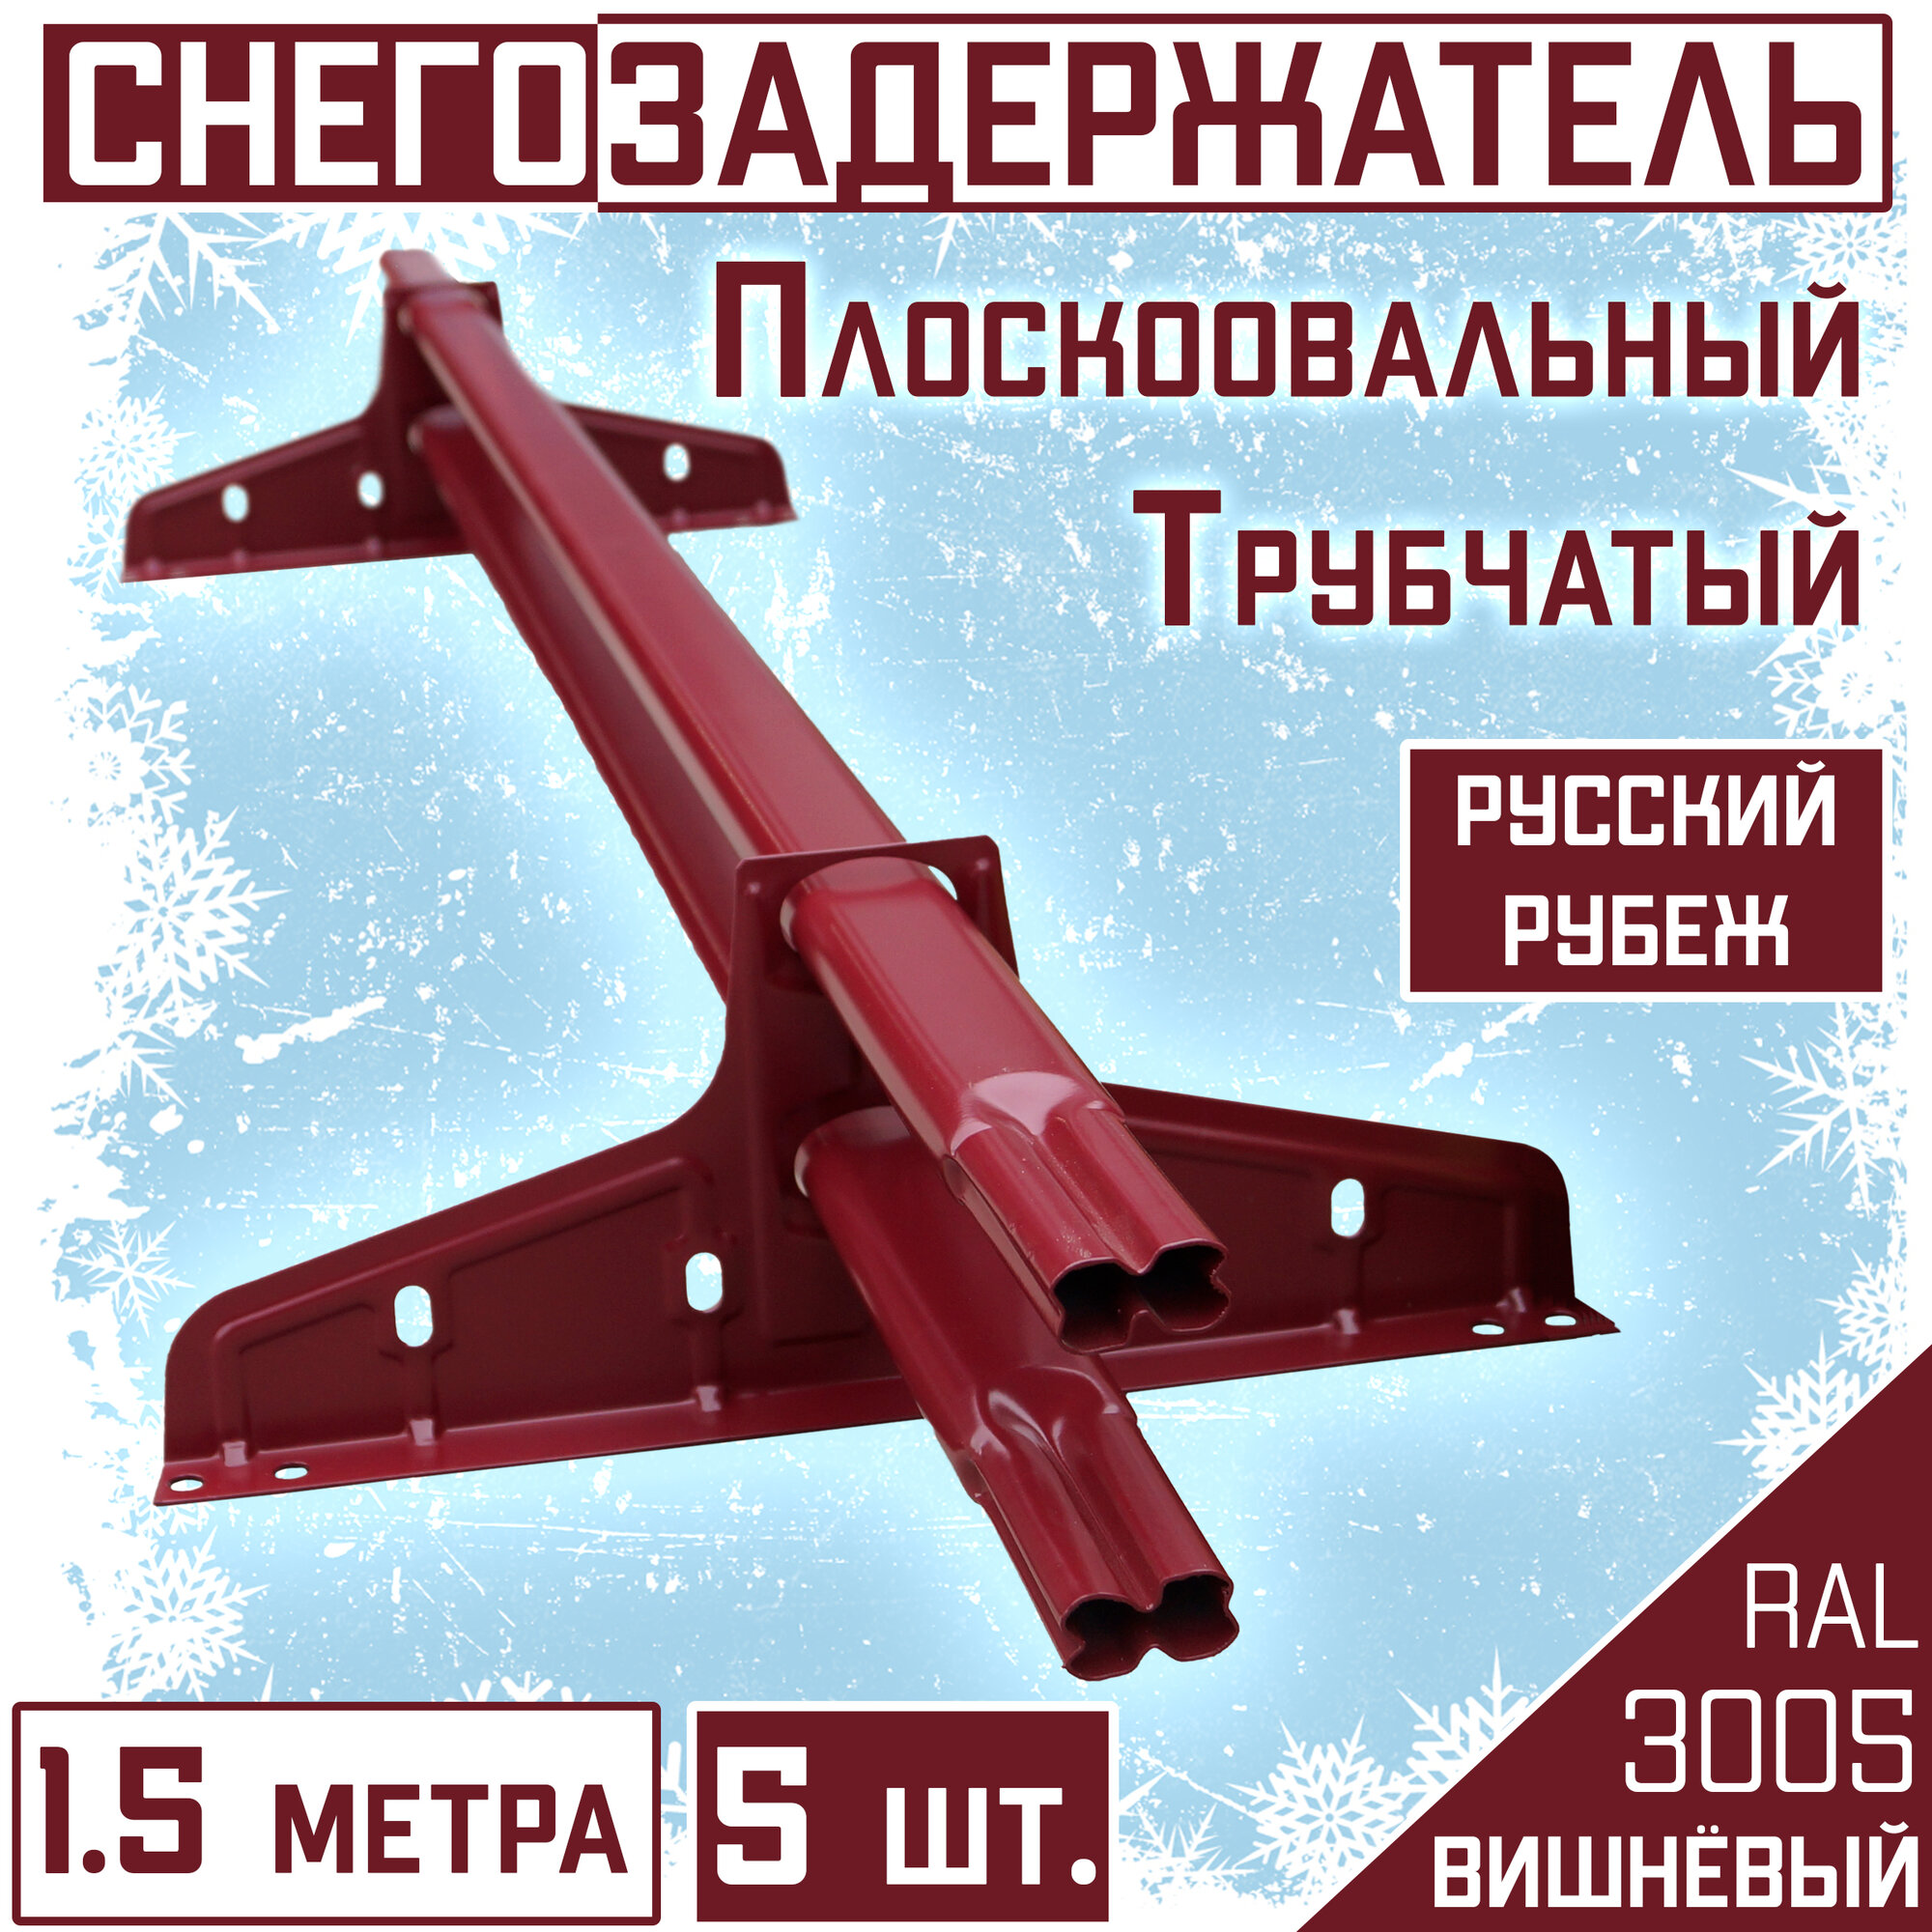 Снегозадержатель 5 штук на крышу трубчатый овальный Borge Русский рубеж(40х20 мм/ 5х1,5м)RAL 3005 вишневый для гибкой и металлочерепицы, профнастила